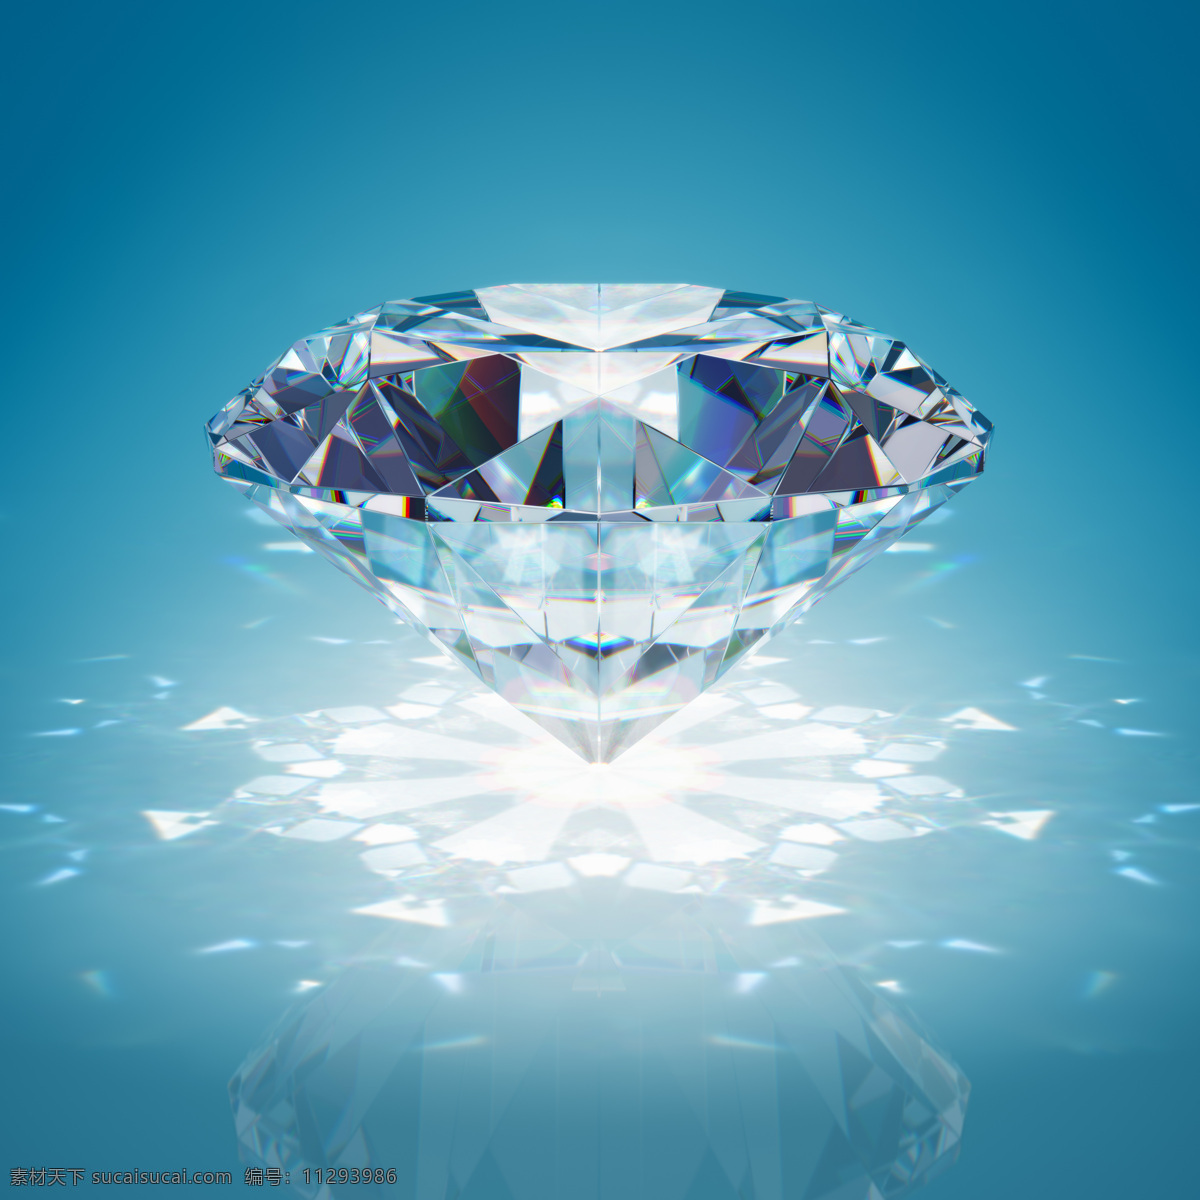 钻石 钻石素材 金钢石 宝石 蓝钻 红钻 白钻 锥形钻石 3d设计